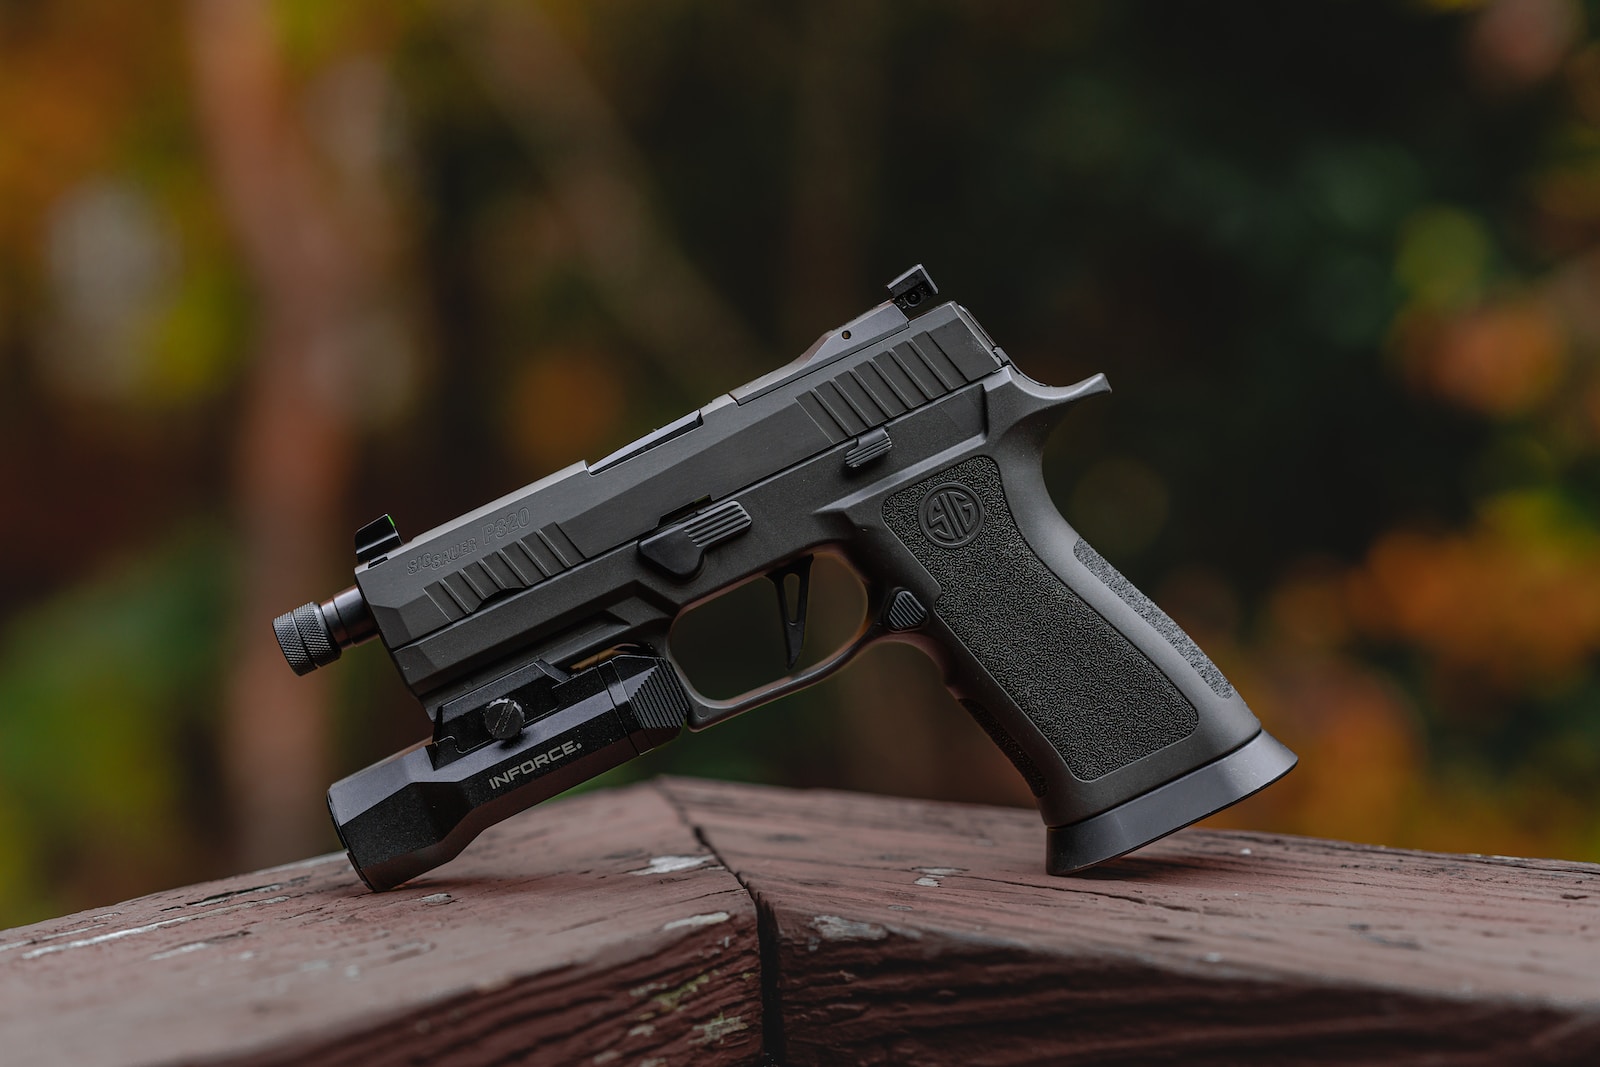 Best handguns under $1000 a close up of a gun on a wooden surface